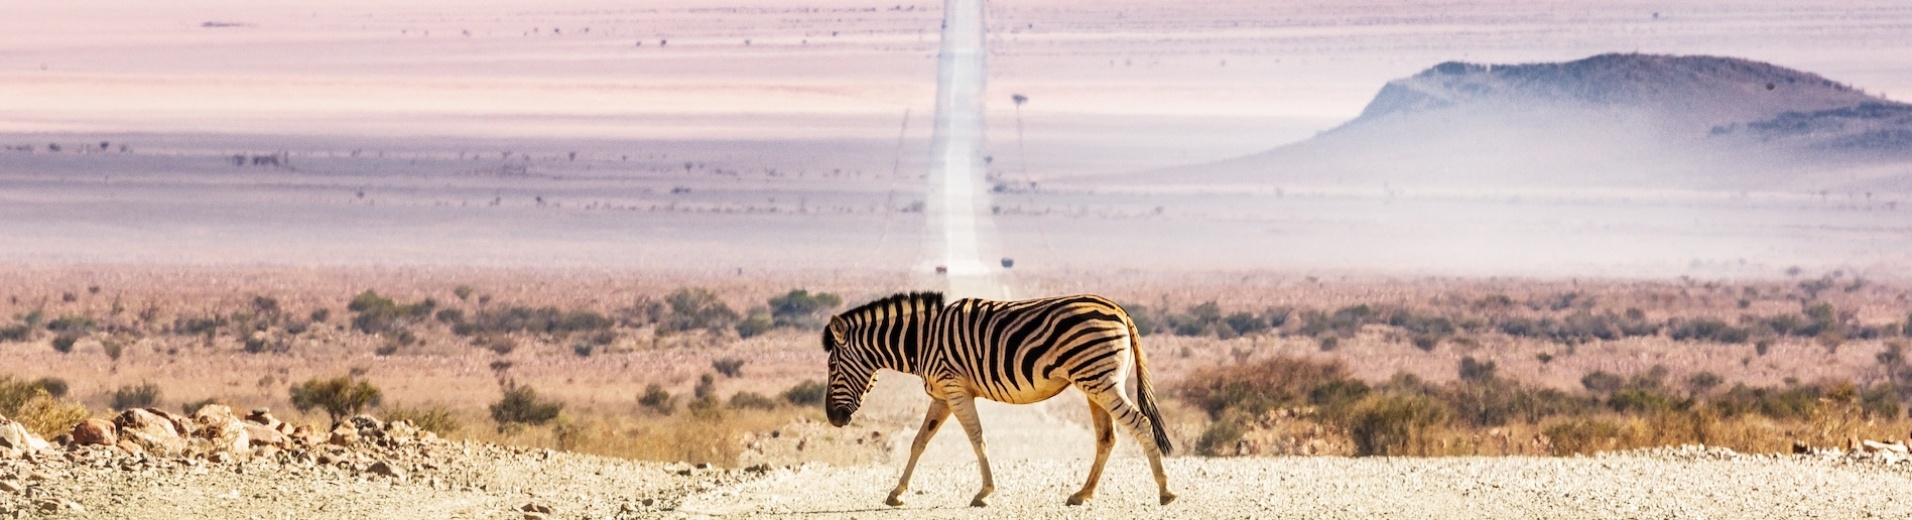 Zèbre traversant une route namibie